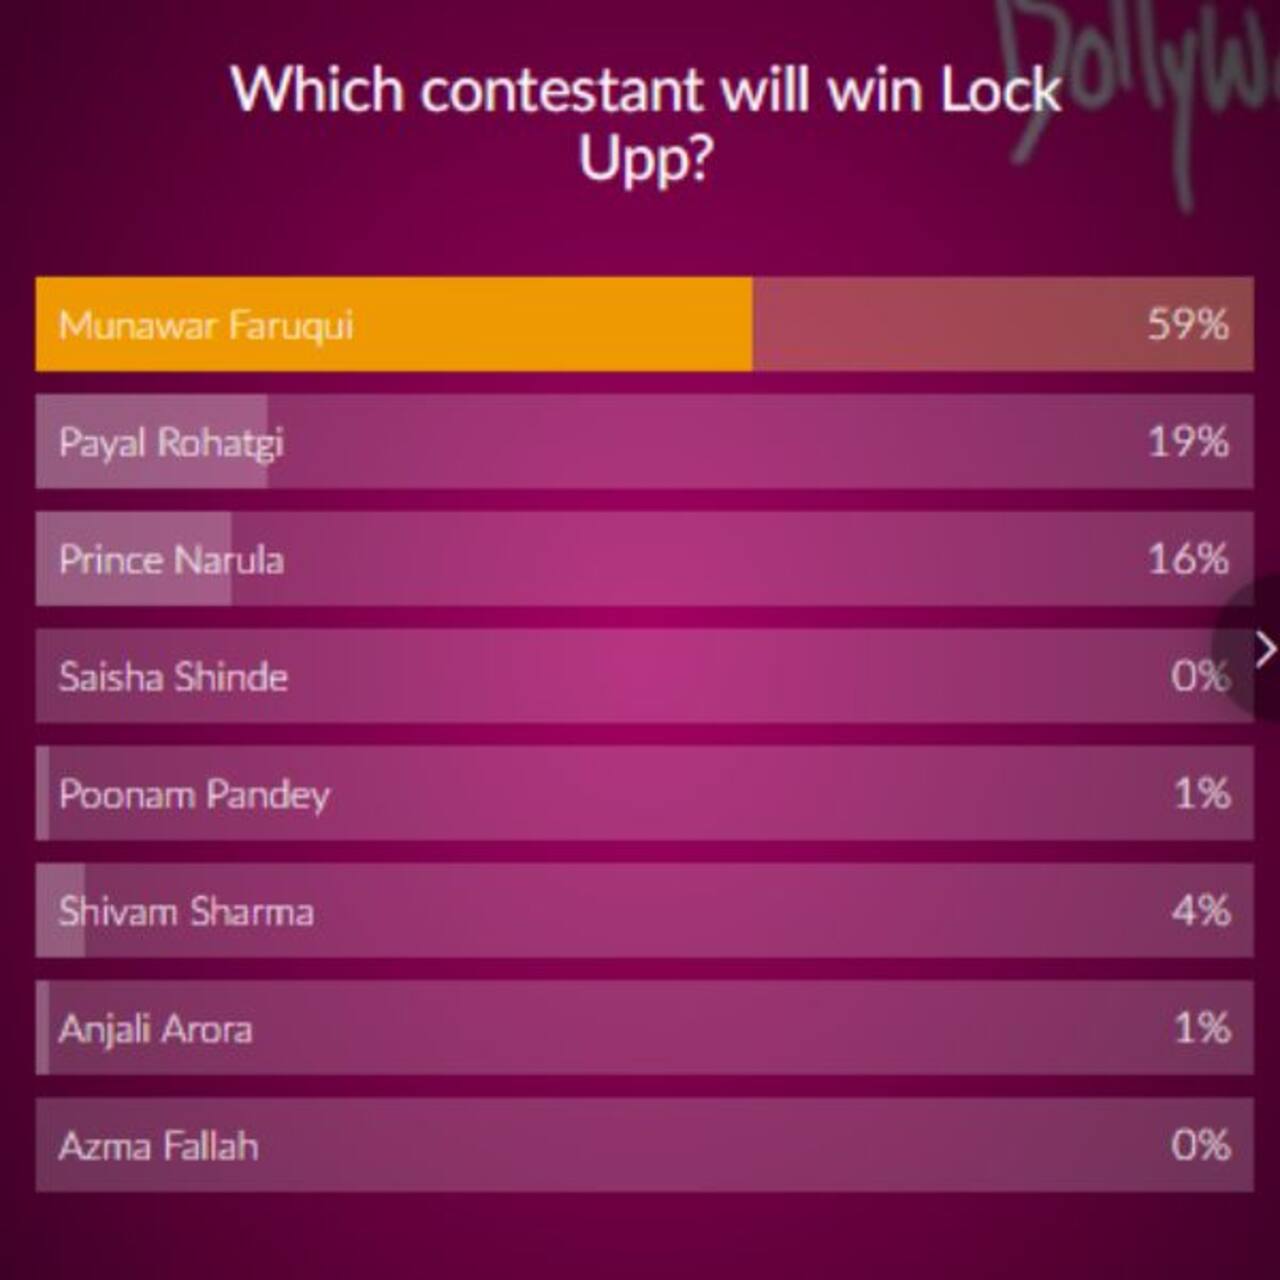 Lock Upp Poll results